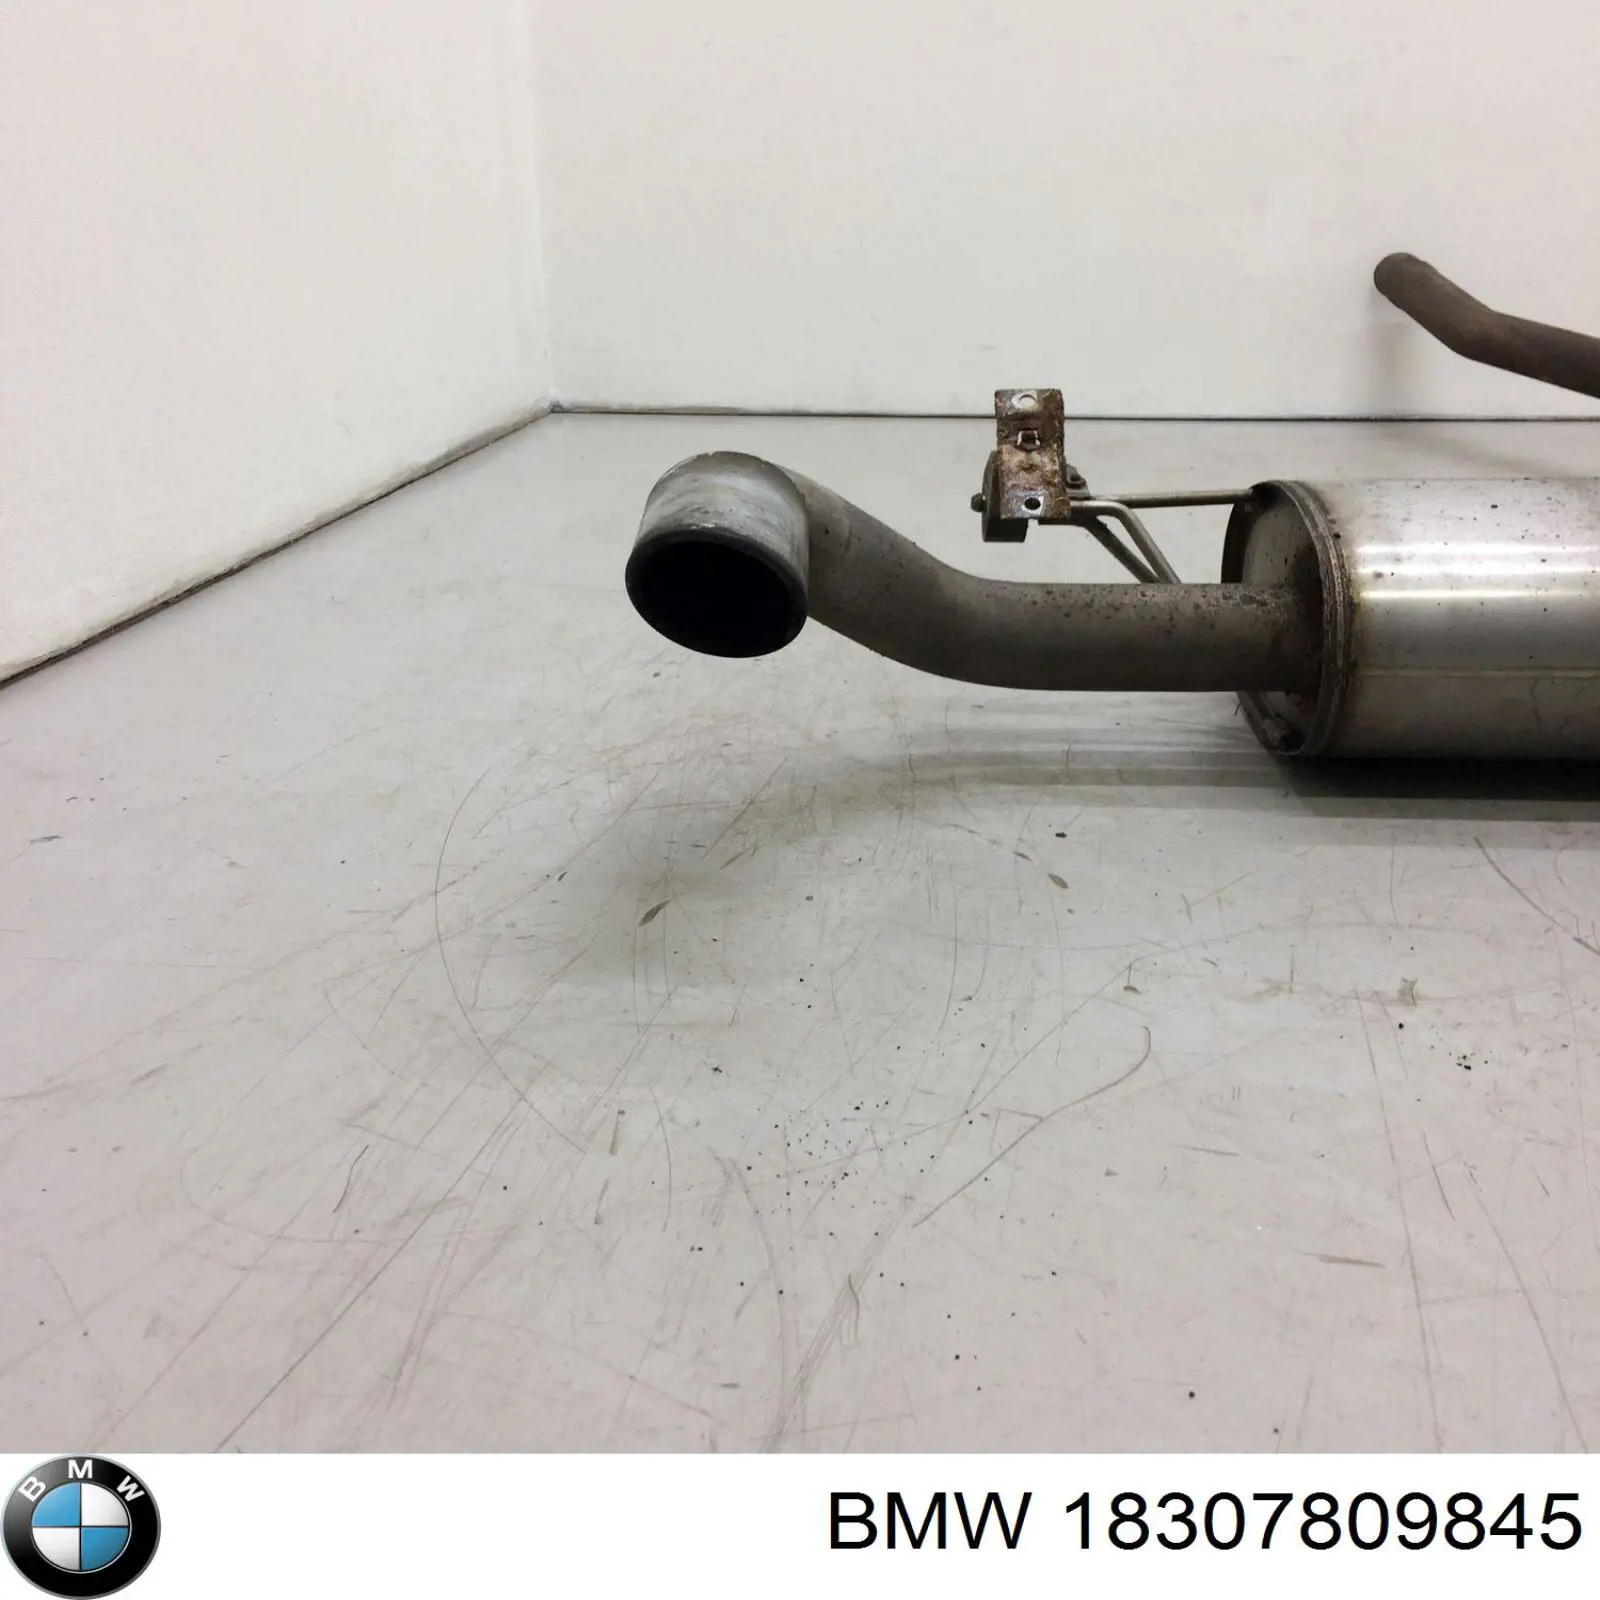 18307809845 BMW silenciador posterior